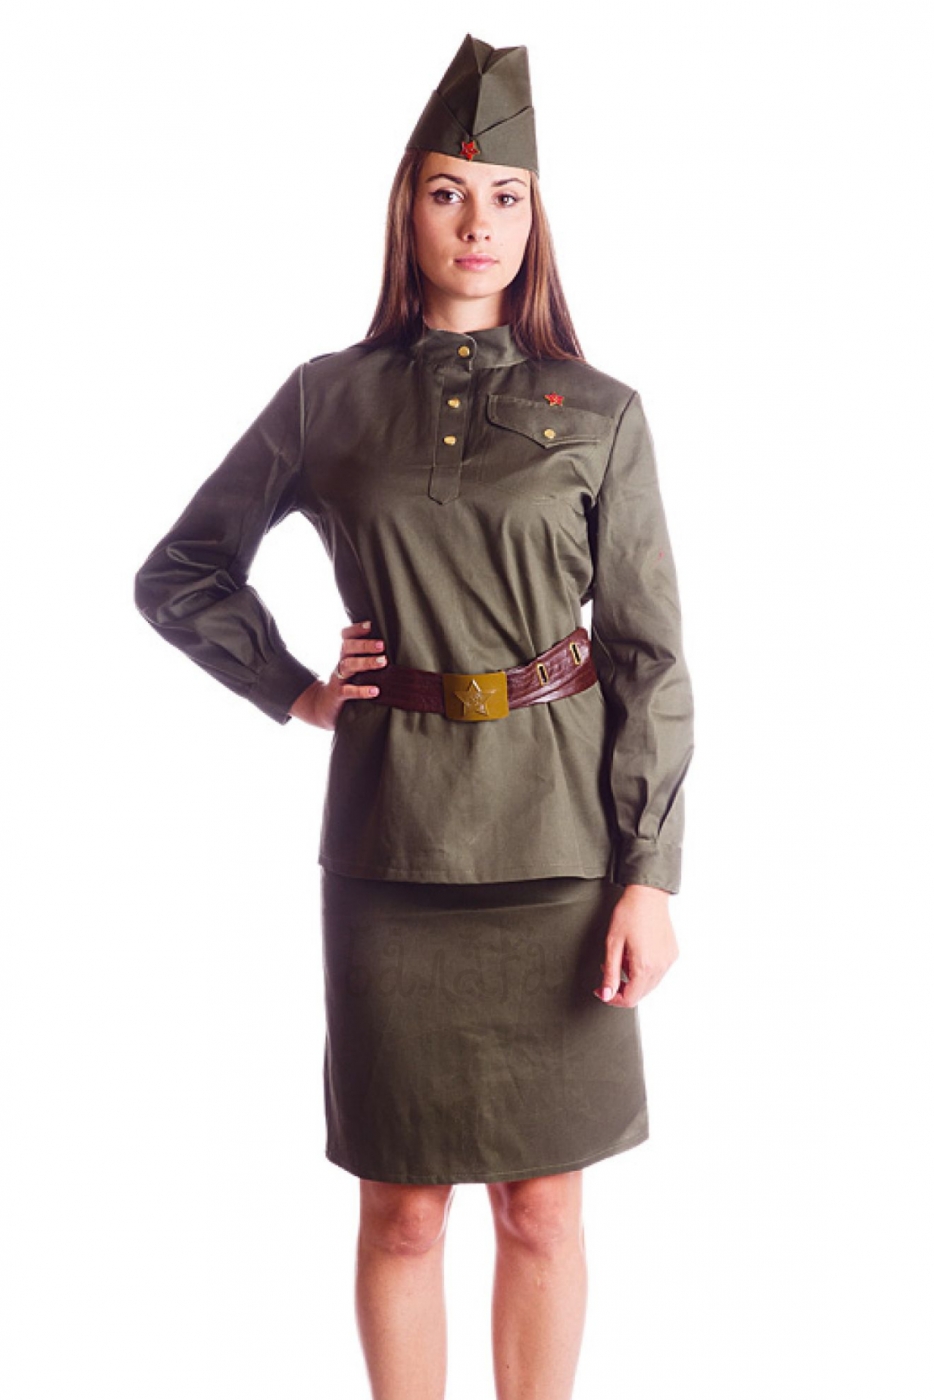 Military costume for woman short skirt